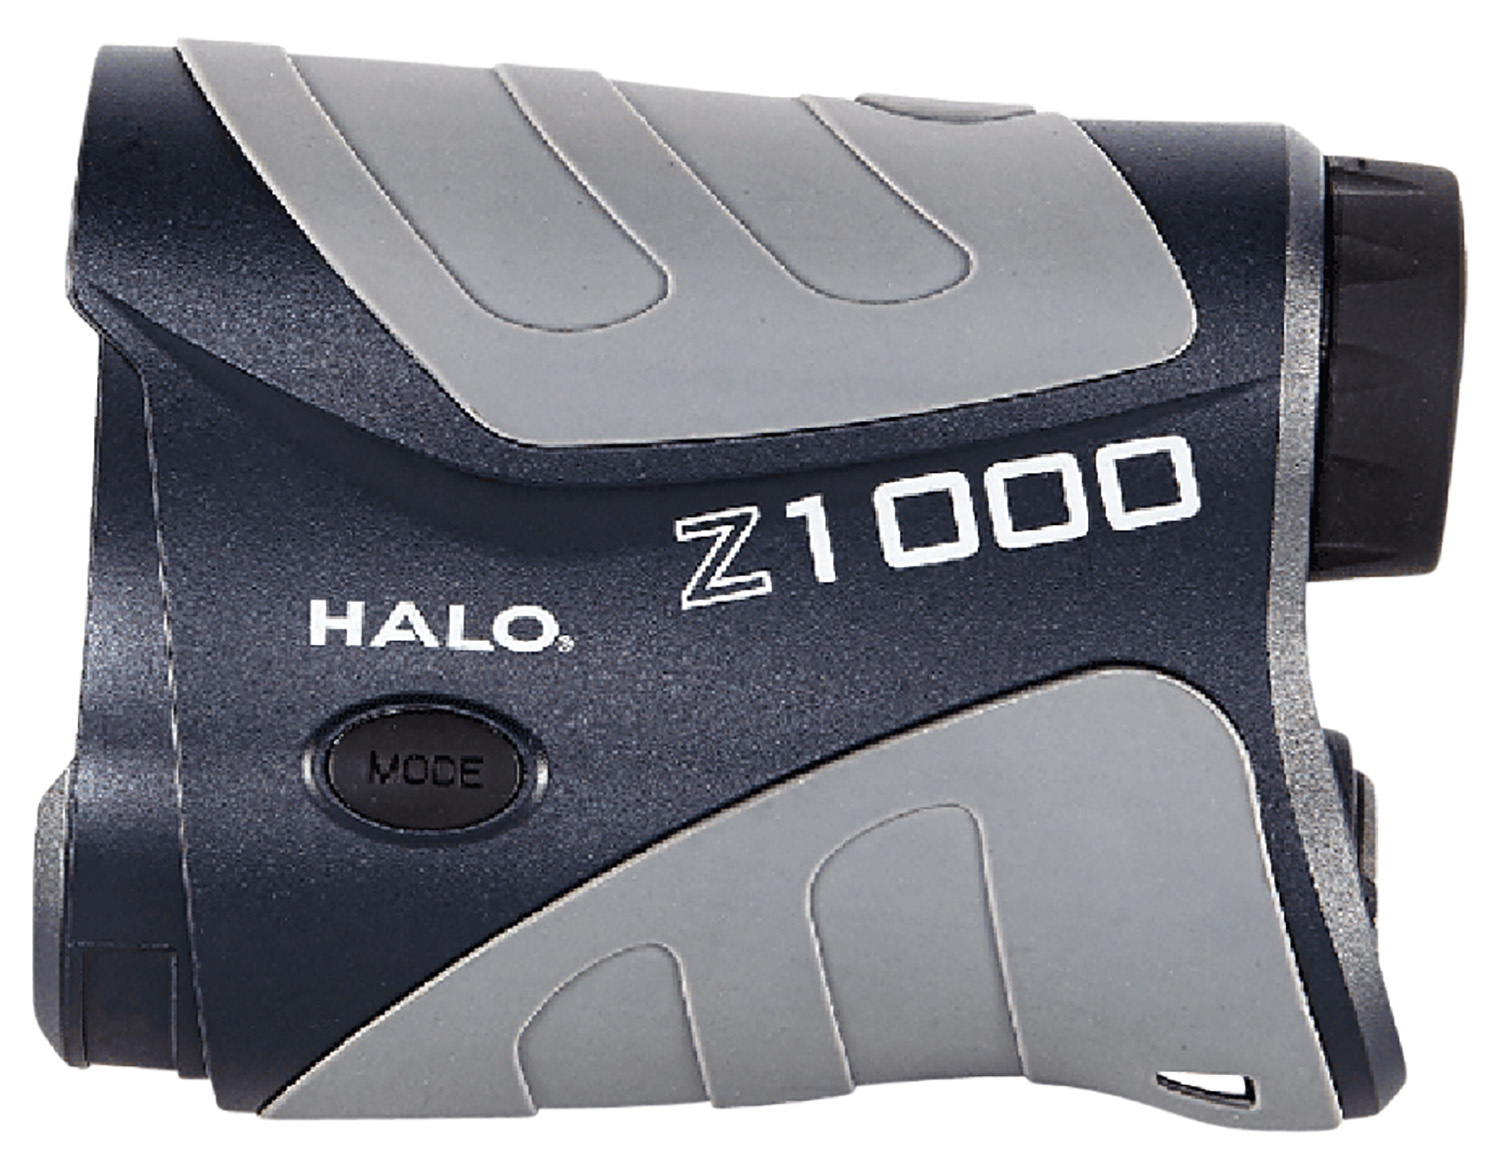 Wildgame Innovations Z1000 -8 Halo Laser Rangefinder 1000 Yard